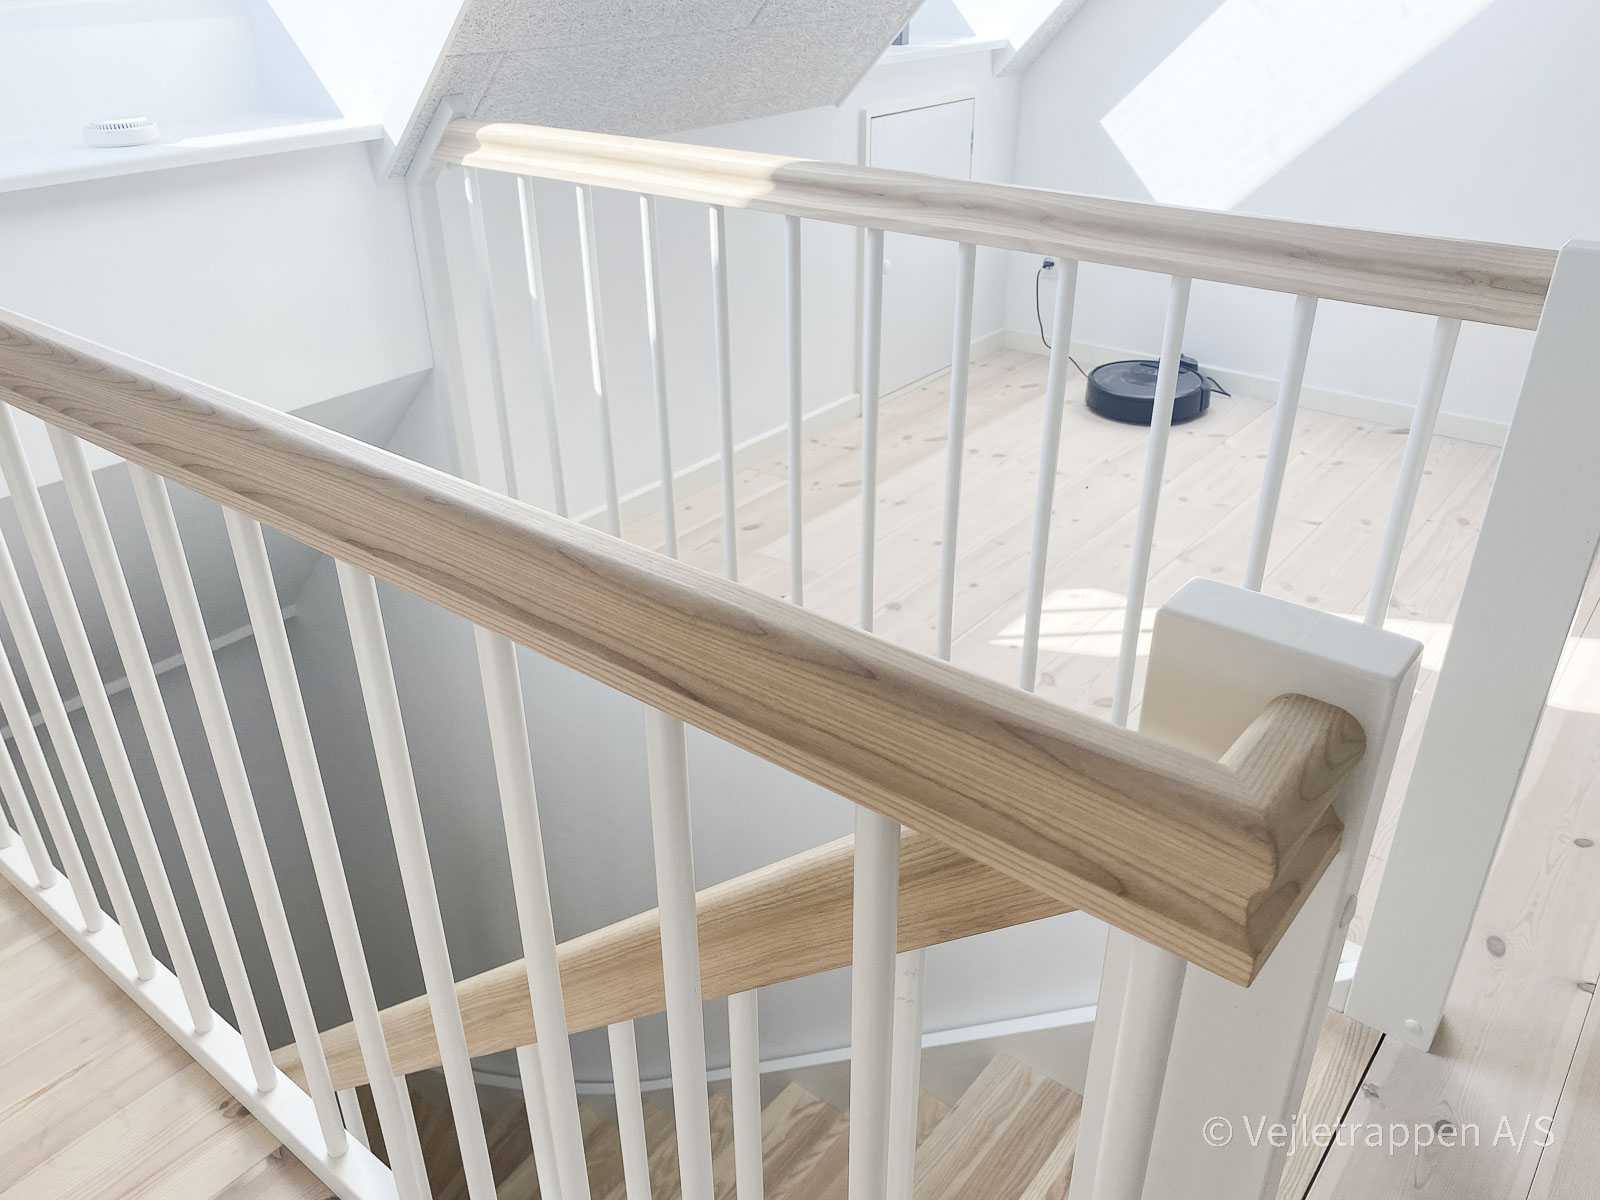 Halvsvingstrappe med trappetrin i eg, monteret som en halvsvingstrappe med trappegelænder med hvide balustre og egetræs gelænder fra Vejletrappen